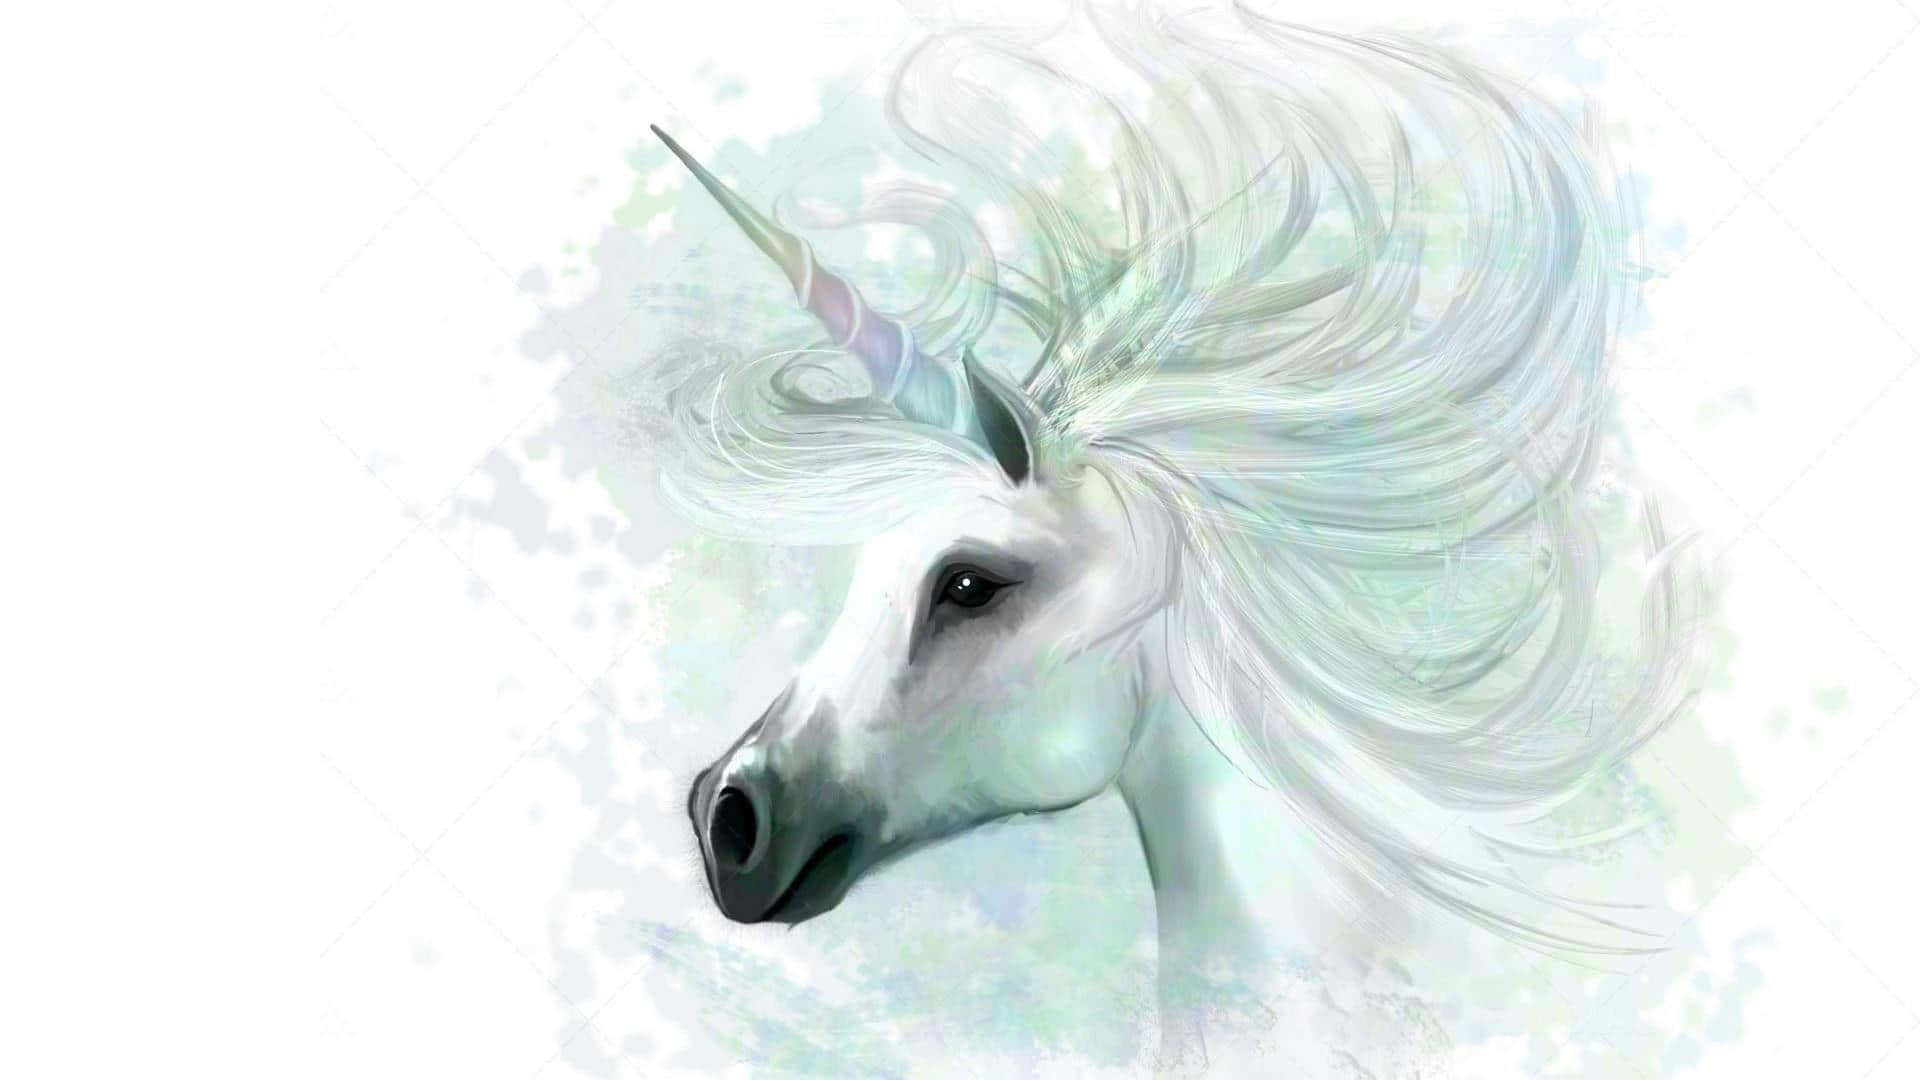 Imagende La Majestuosa Cabeza De Un Unicornio Blanco